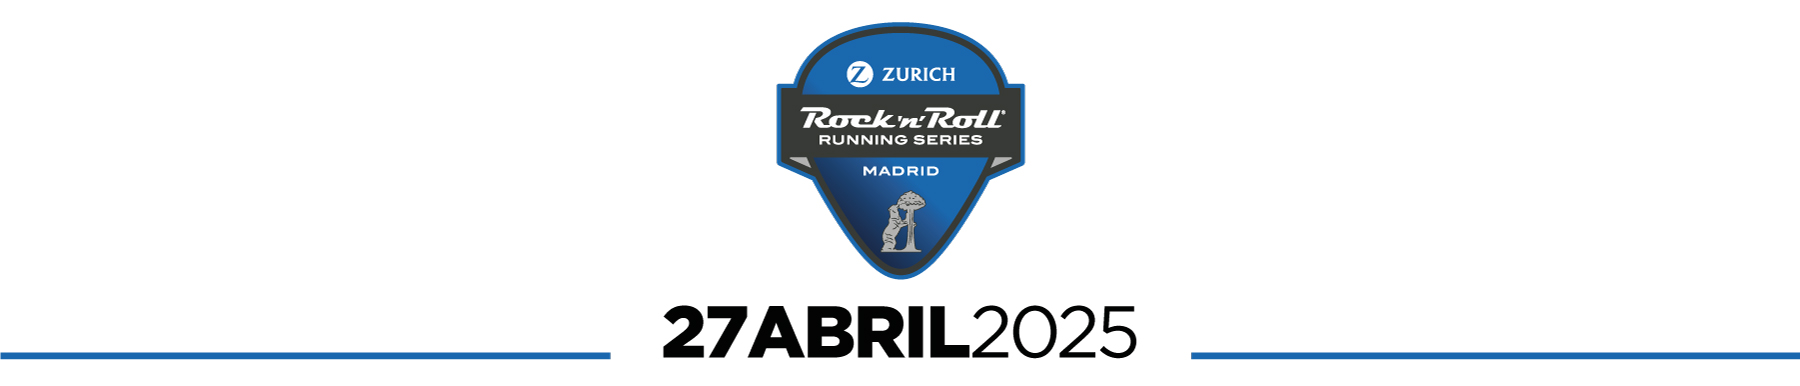 ZURICH ROCK ´N´ ROLL RUNNING SERIES MADRID 2025